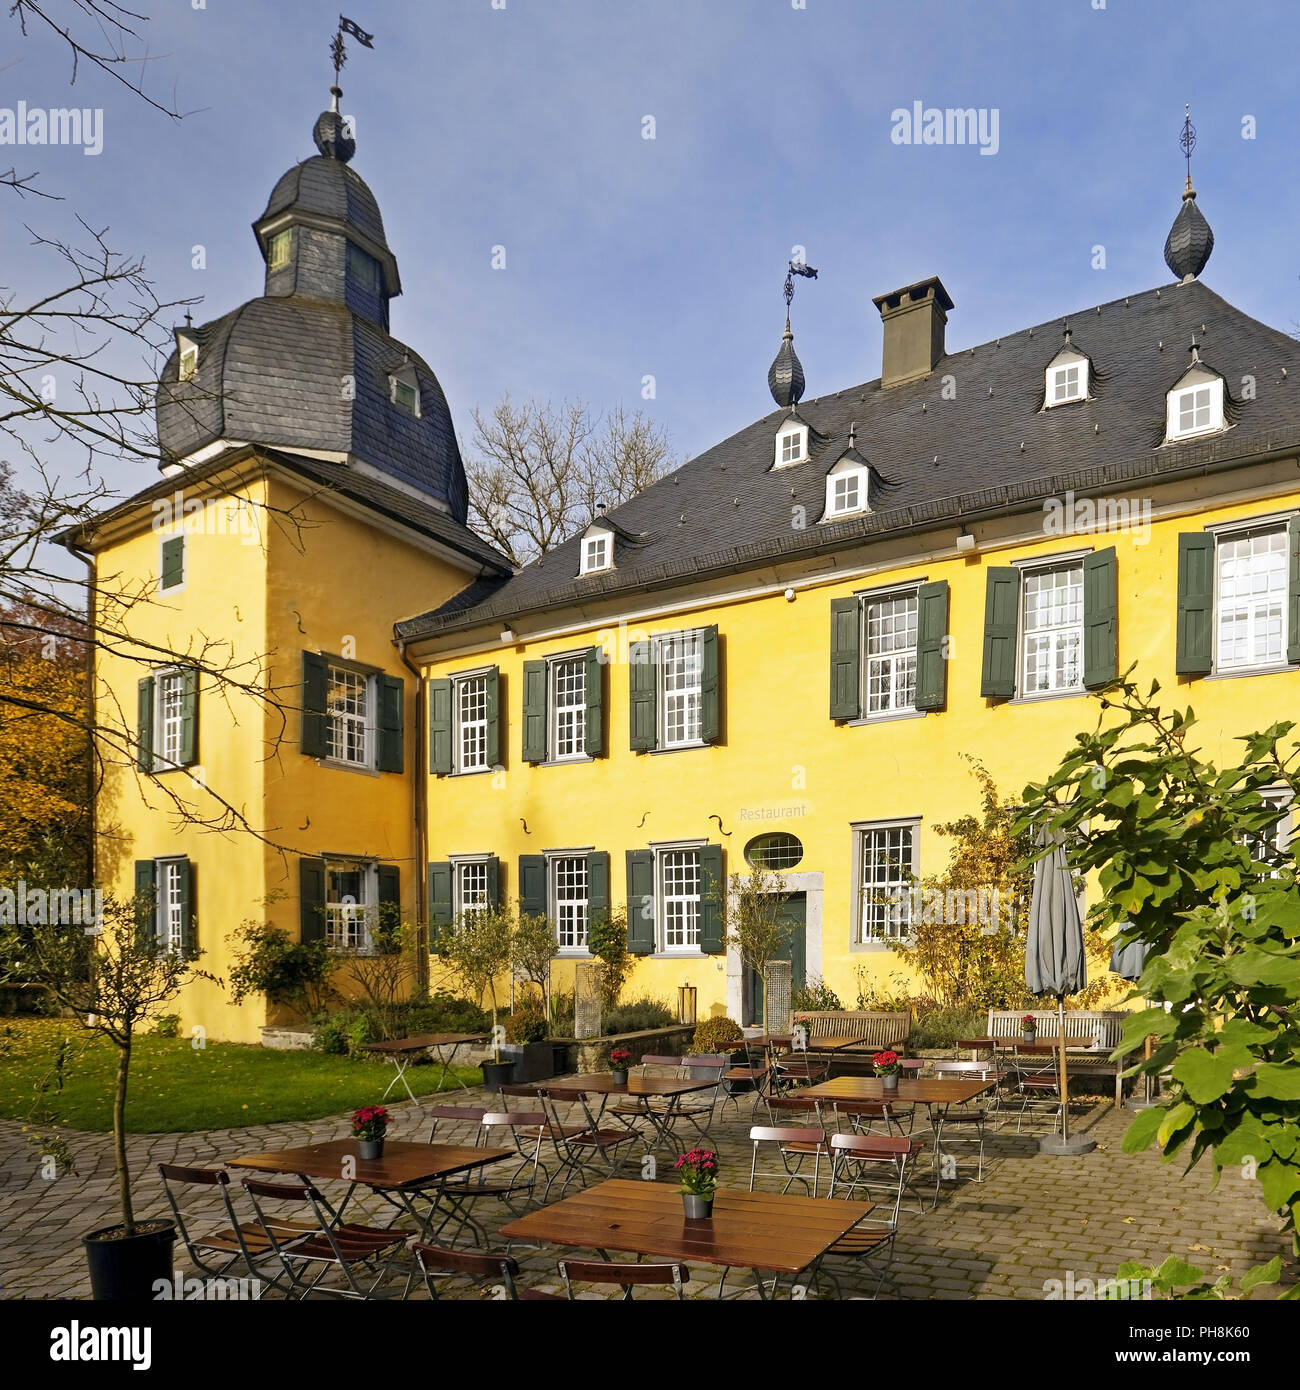 Castle Luentenbeck, autumn, Wuppertal Stock Photo